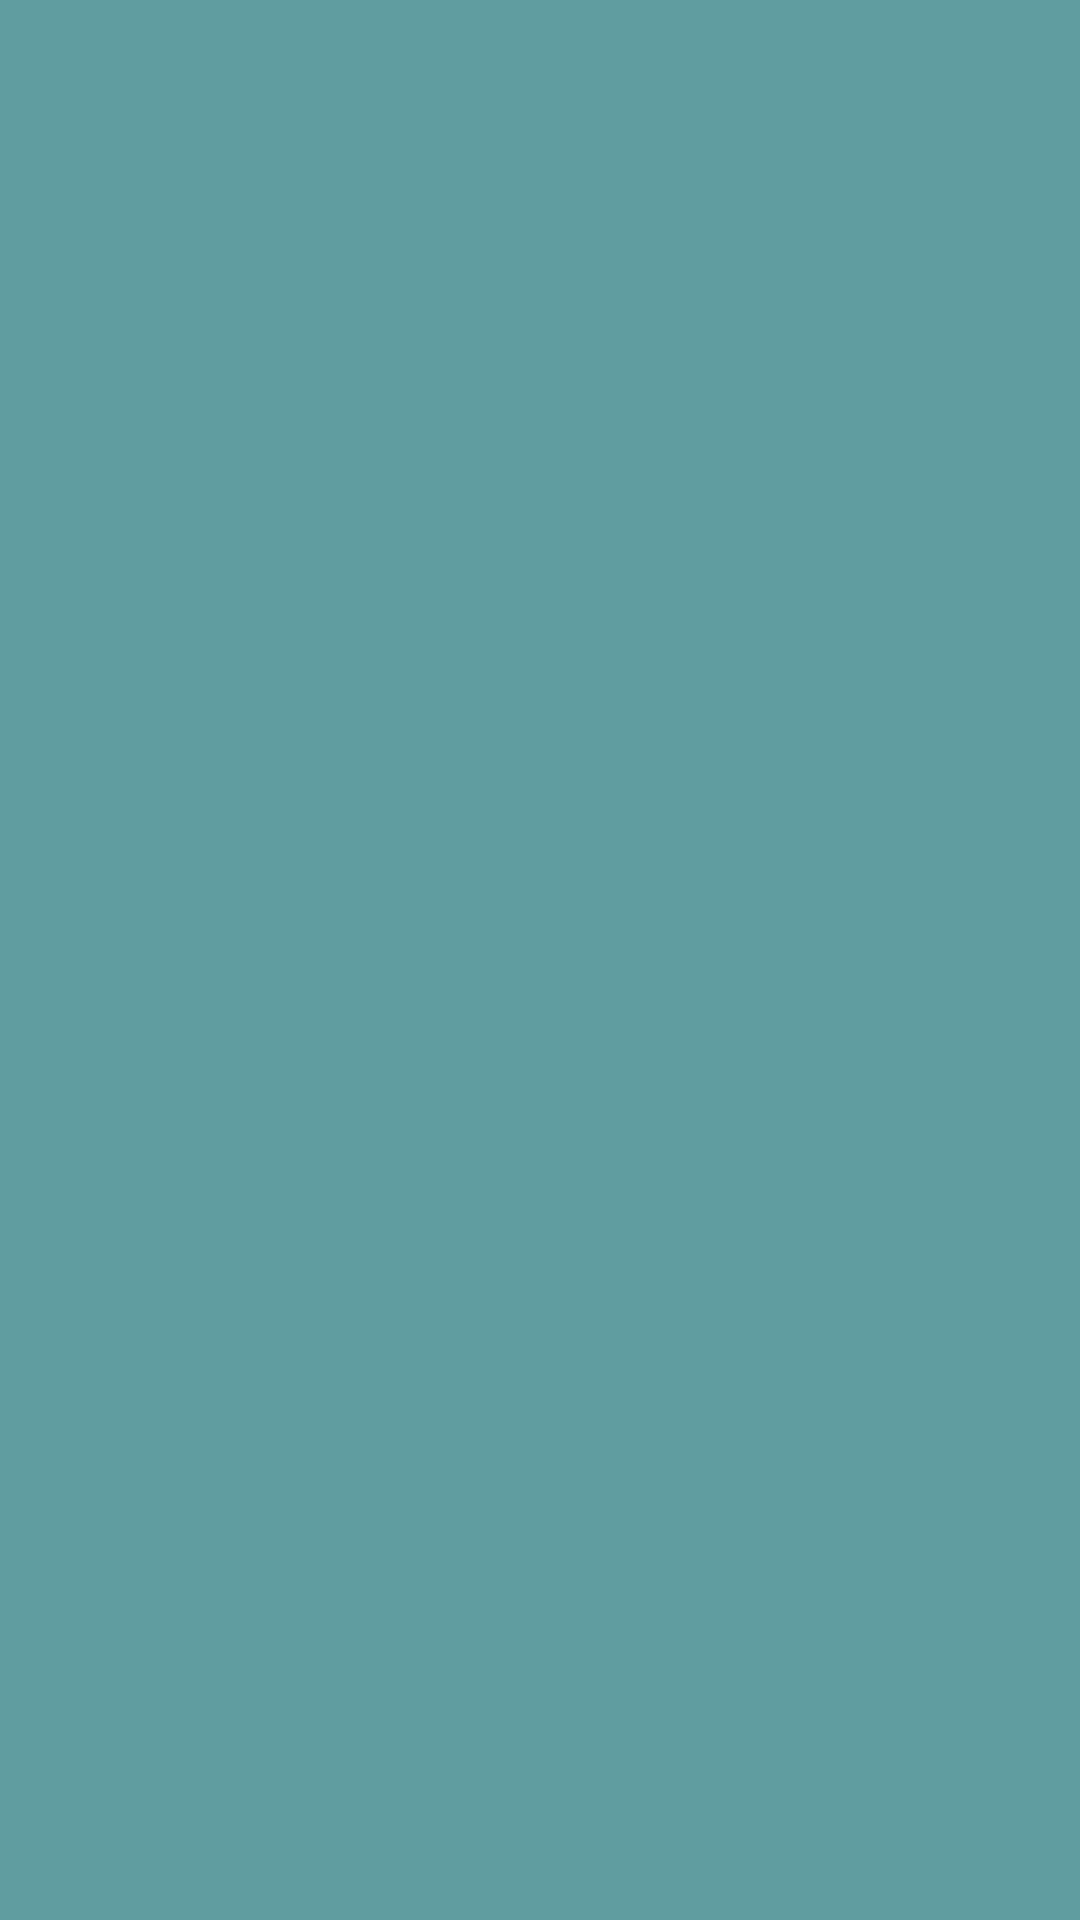 1080x1920 Cadet Blue Solid Color Background